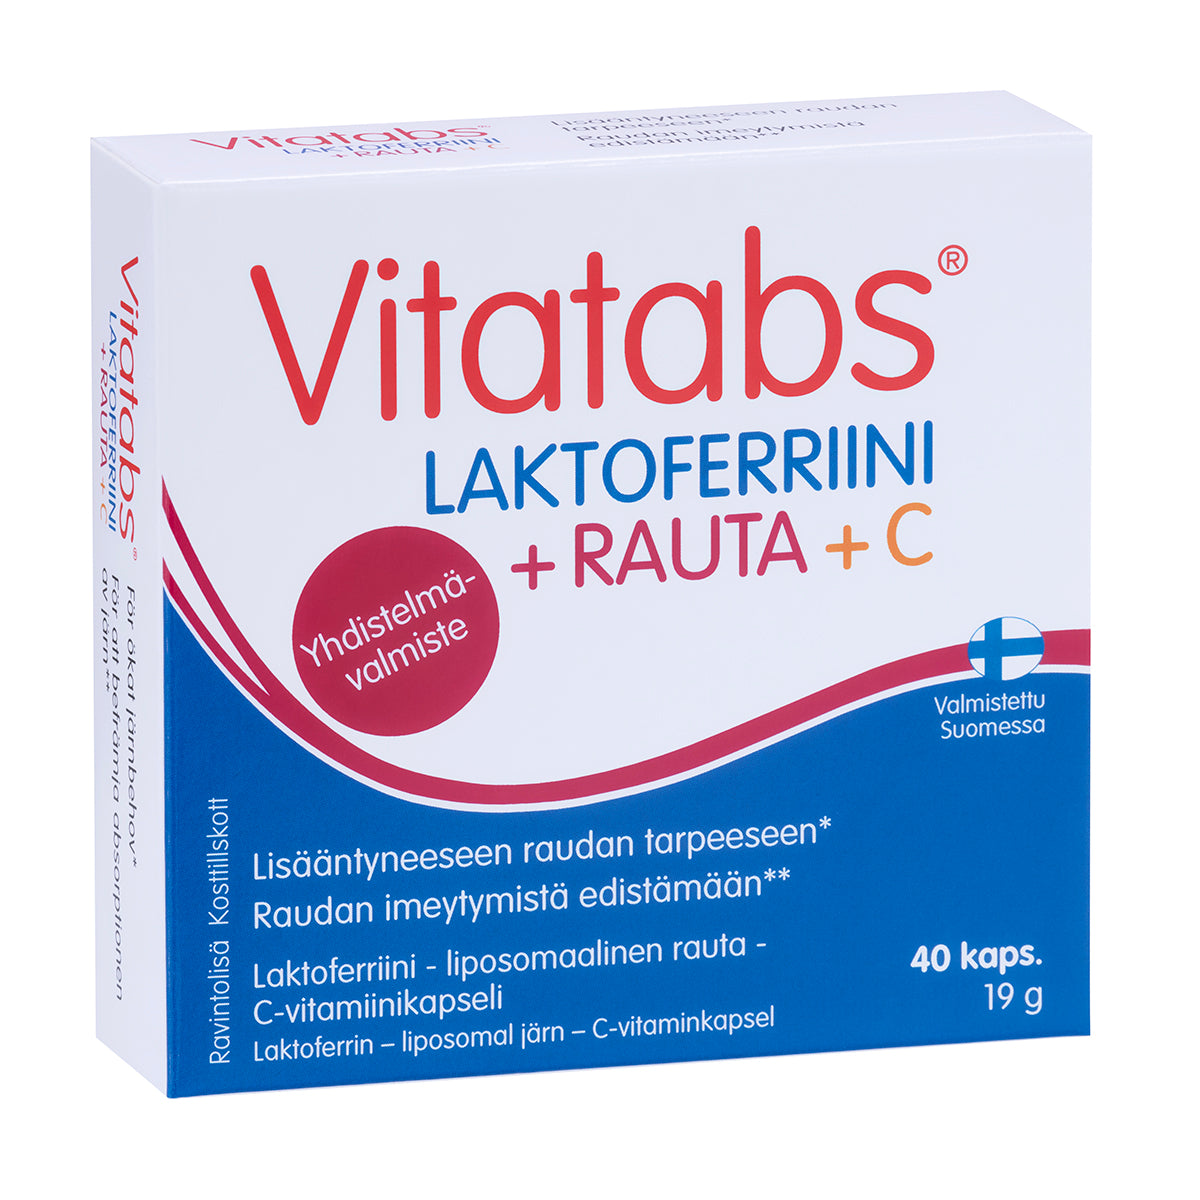 Vitatabs Laktoferriini + Rauta + C 40 kaps.